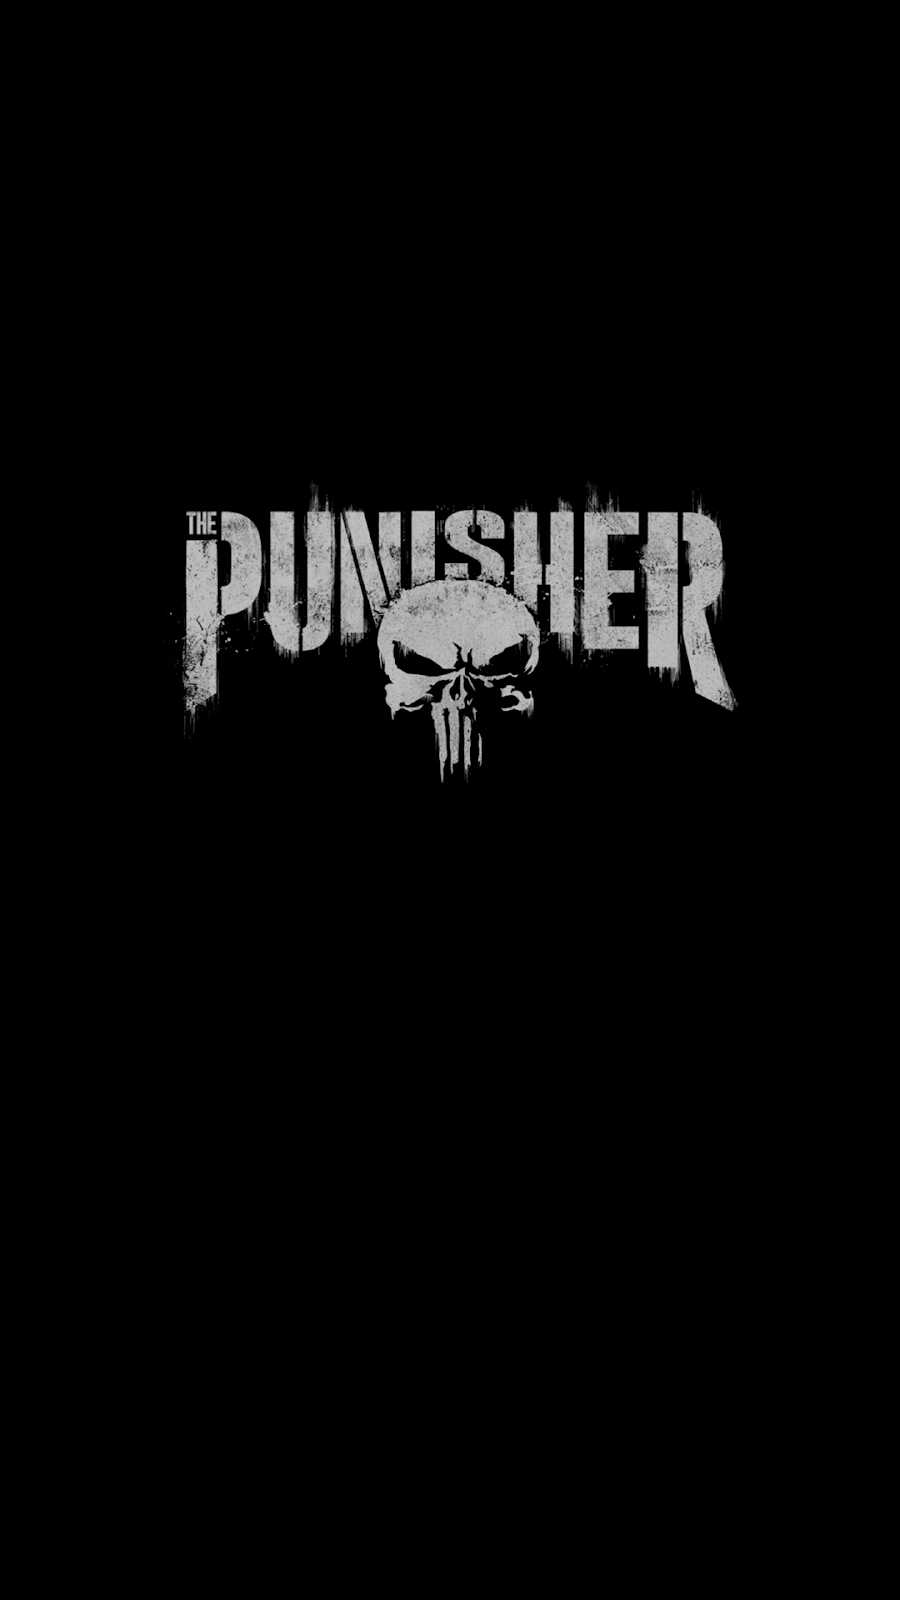 punisher logo oled wallpaper